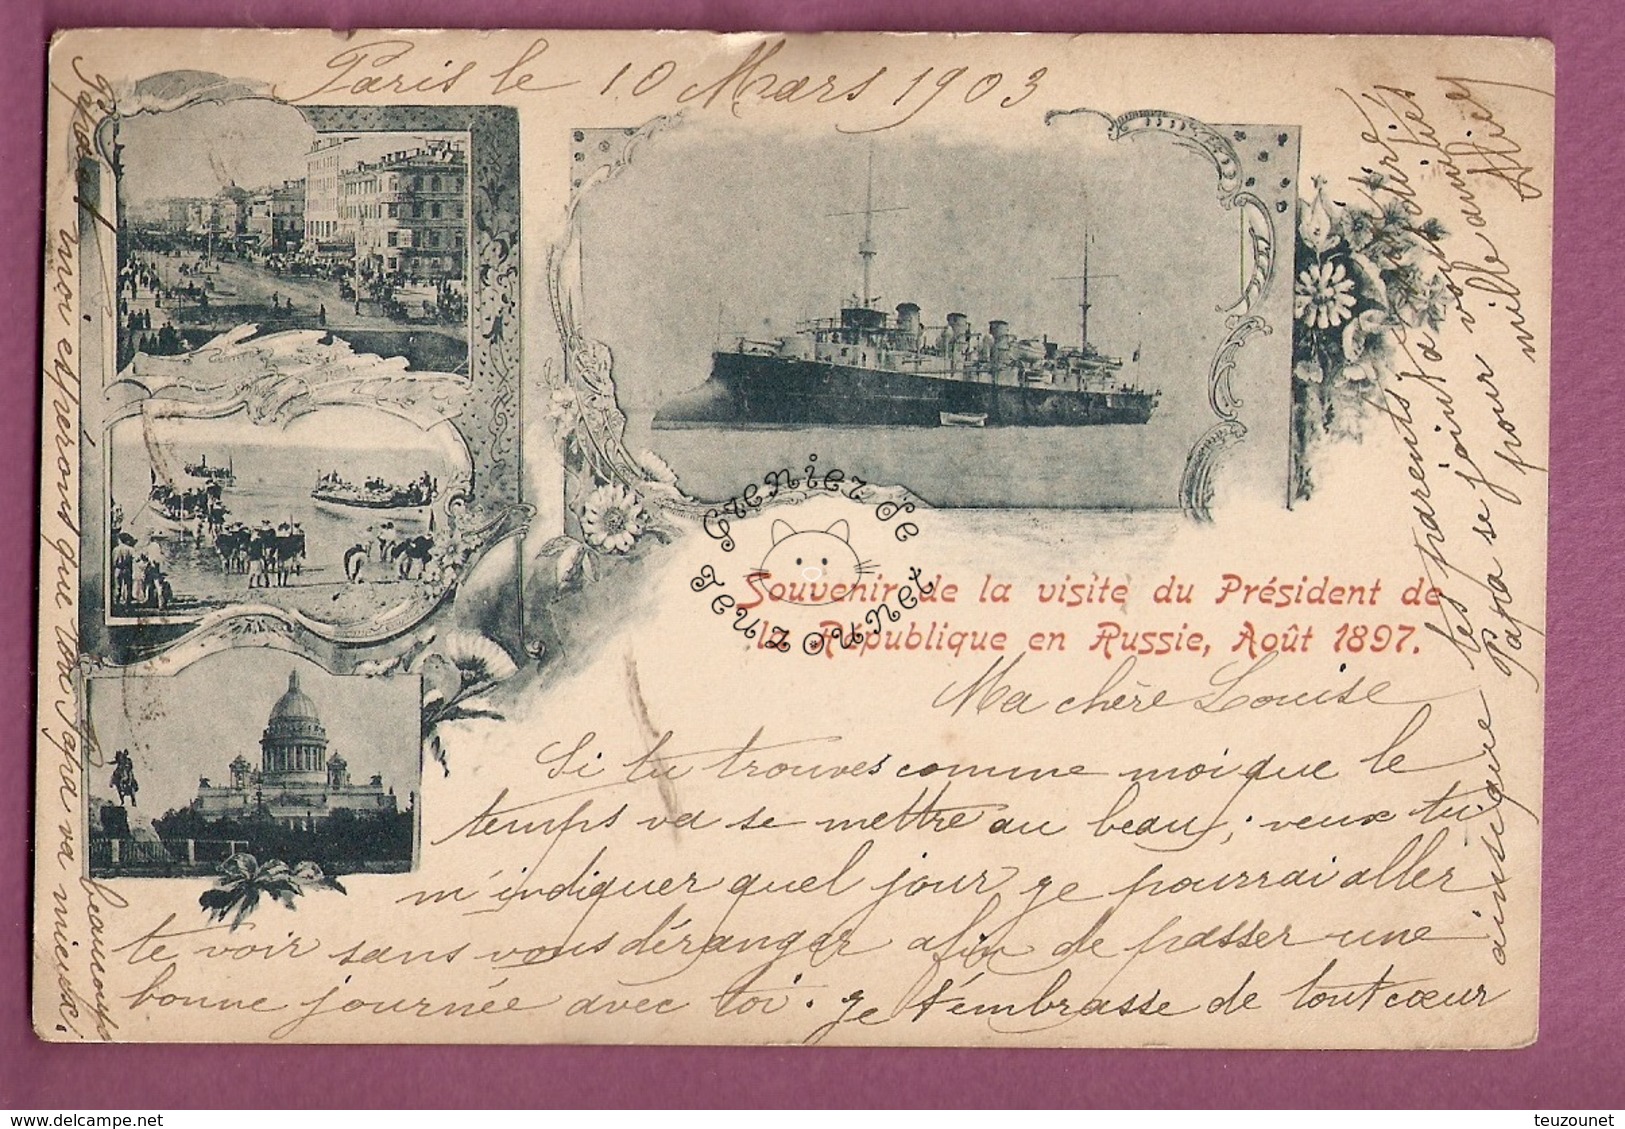 Cpa Souvenir De La Visite Du President De La Republique En Russie, Aout 1897 - Evènements